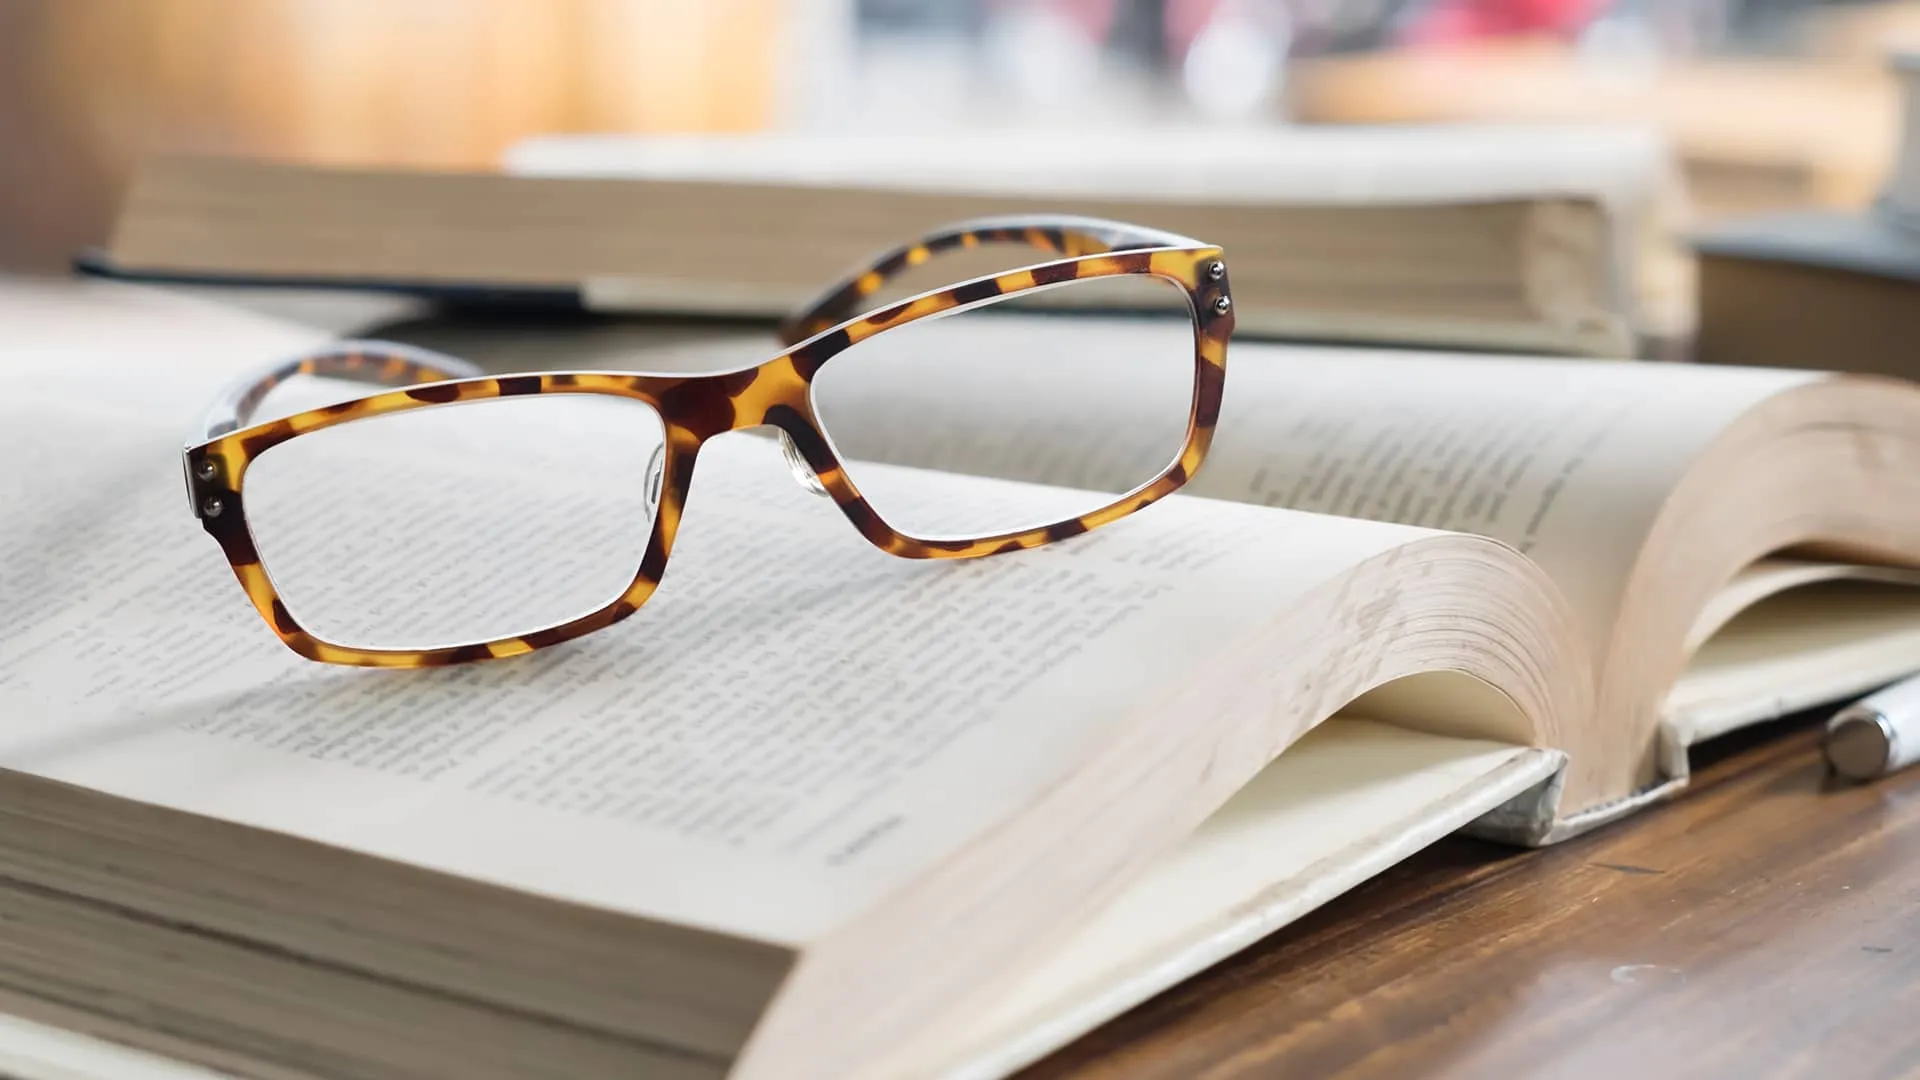 Brýle položené na tlusté knize představující "nájemní právo", symbolizující hlubší porozumění tématu.